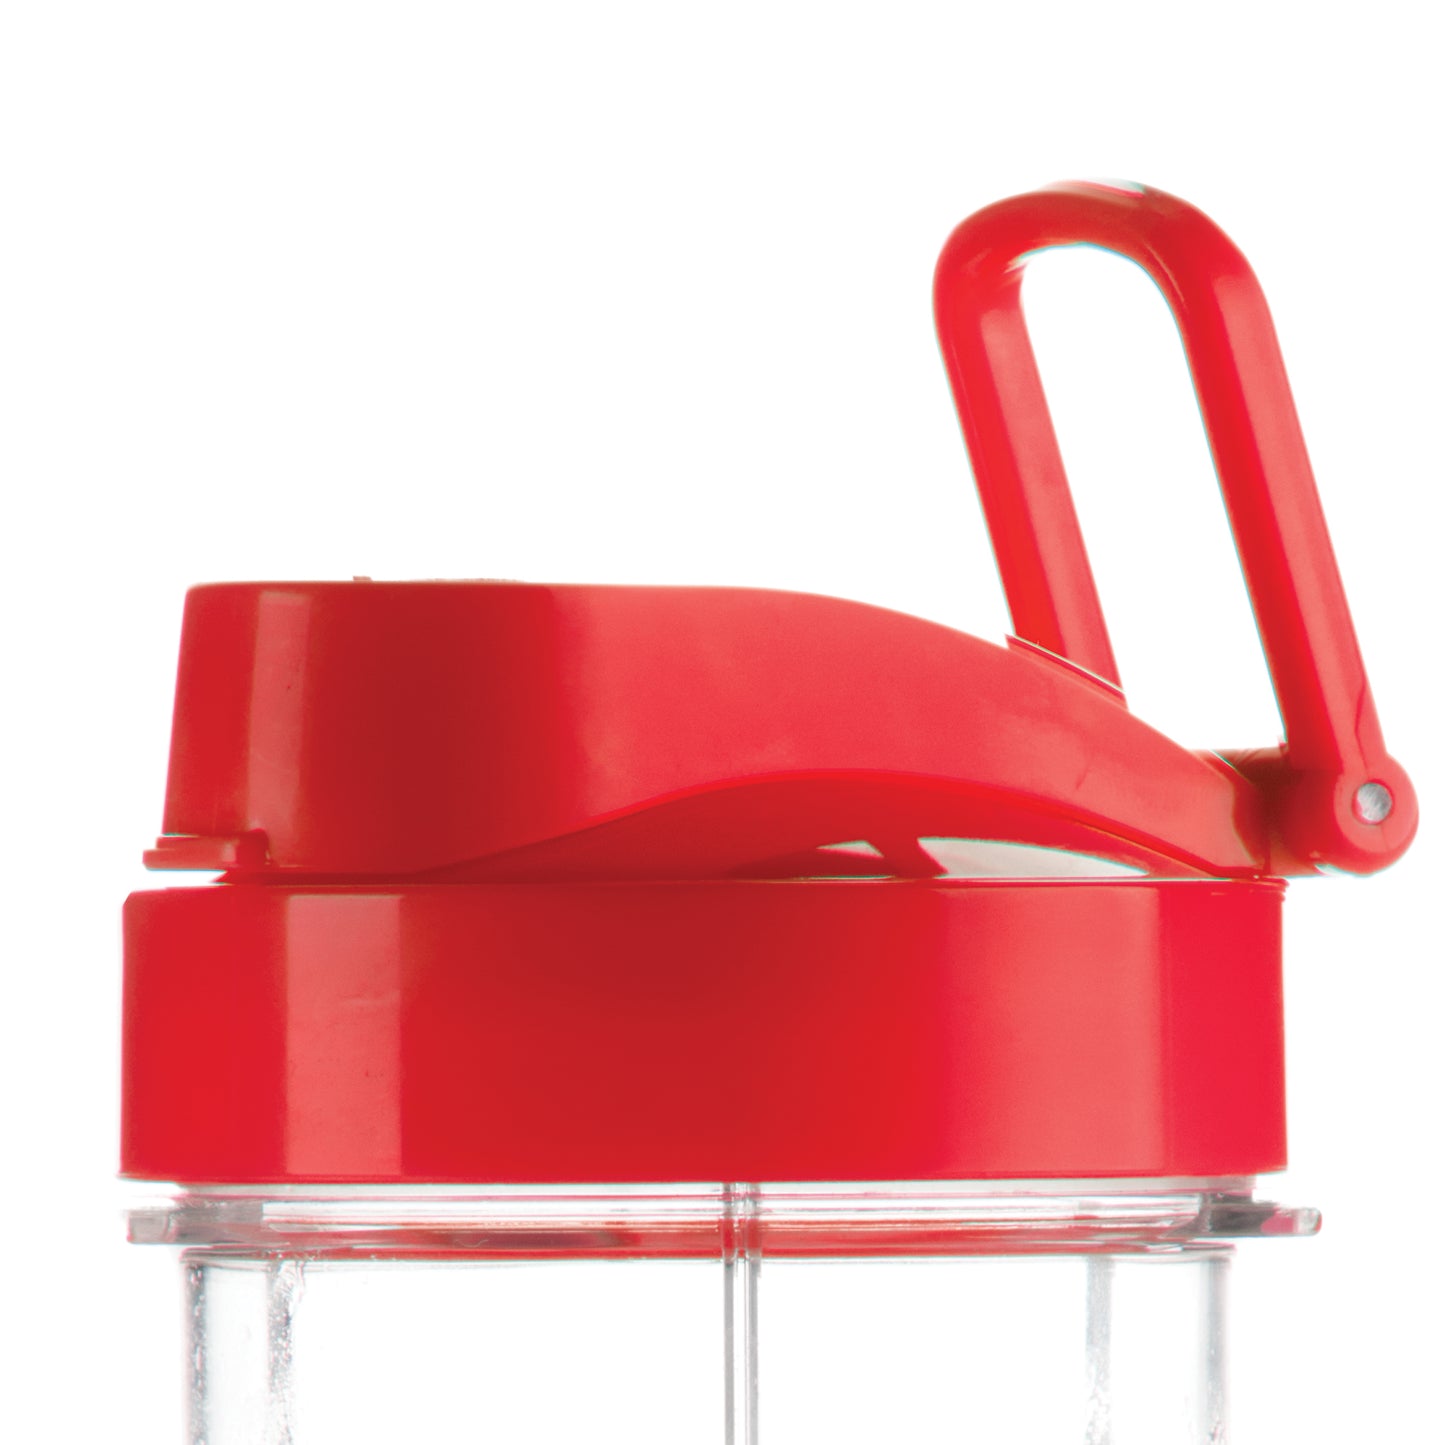 P002851 - Tasse pour machine à smoothie 99330, 9931, 99336, rouge